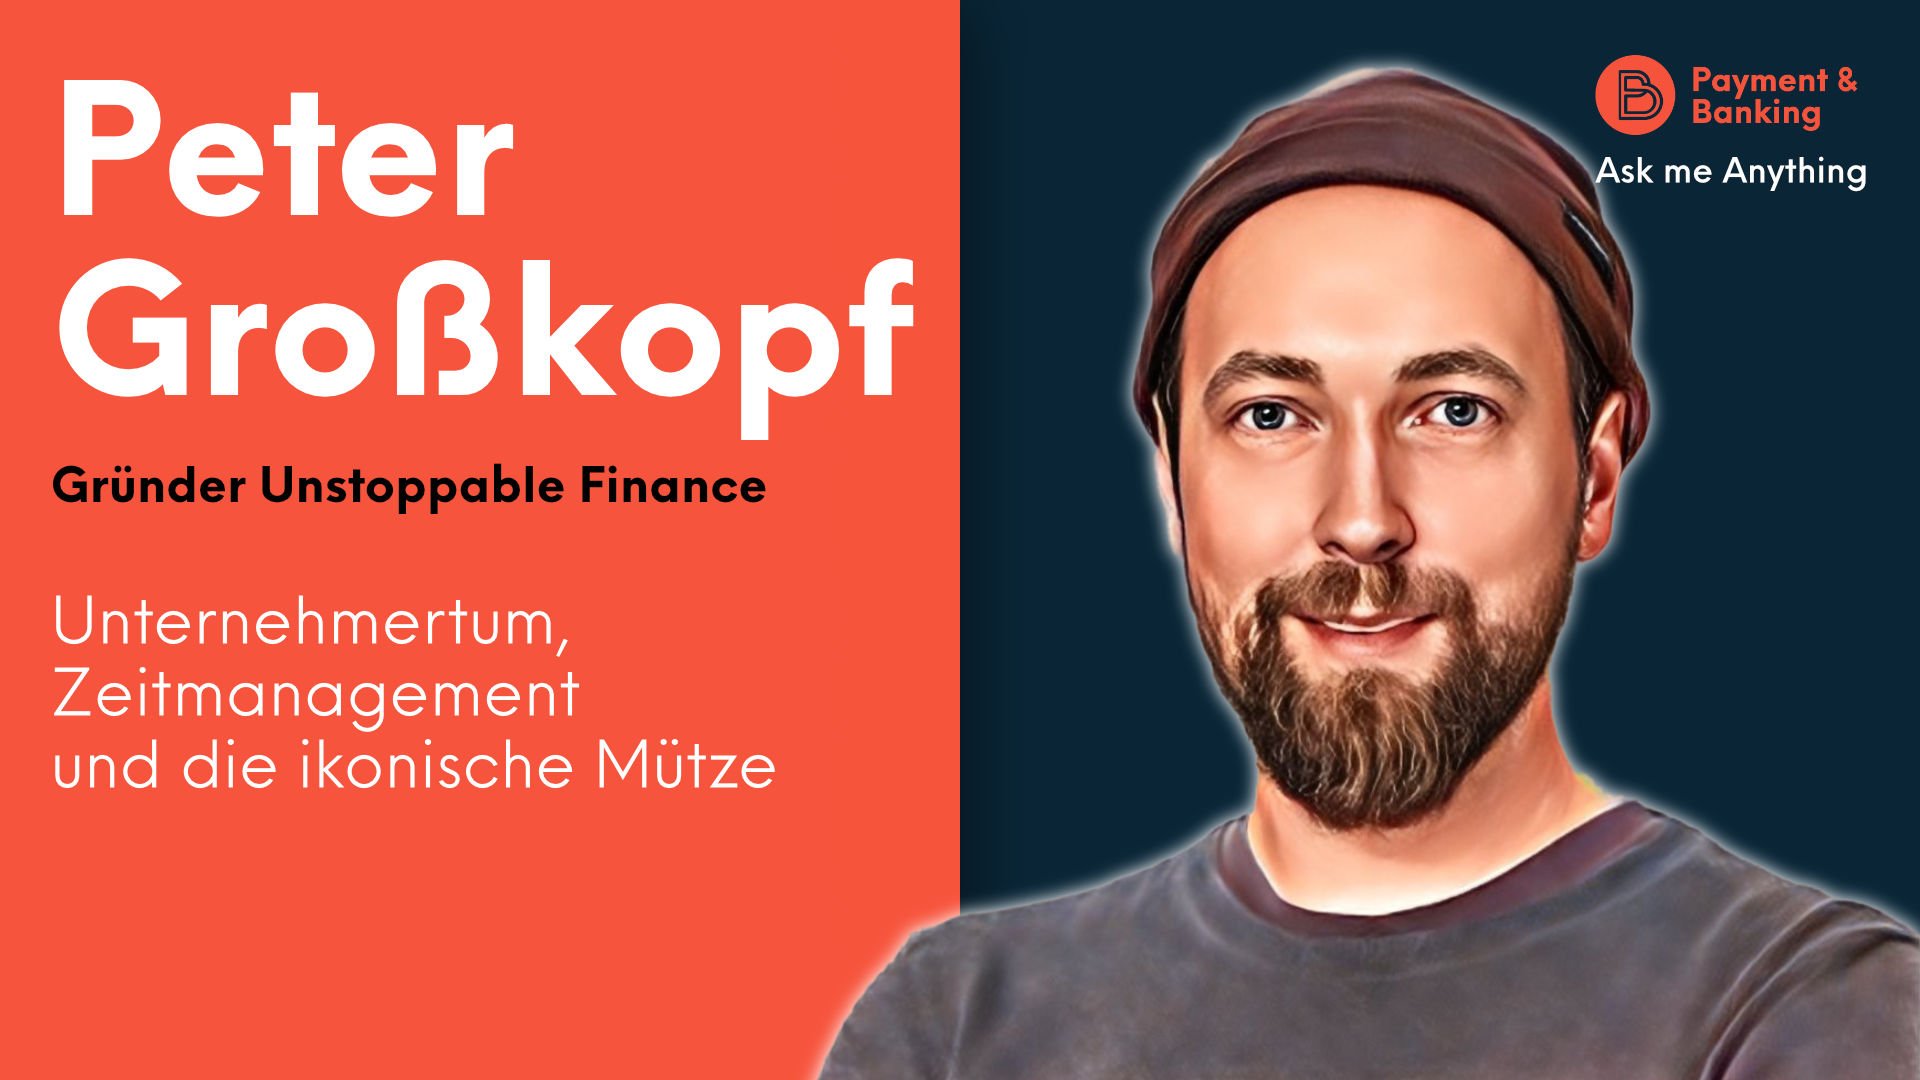 Peter Großkopf (Gründer Unstoppable Finance) spricht im AMA über Unternehmertum, Zeitmanagement, seine ikonische Mütze und vieles mehr!